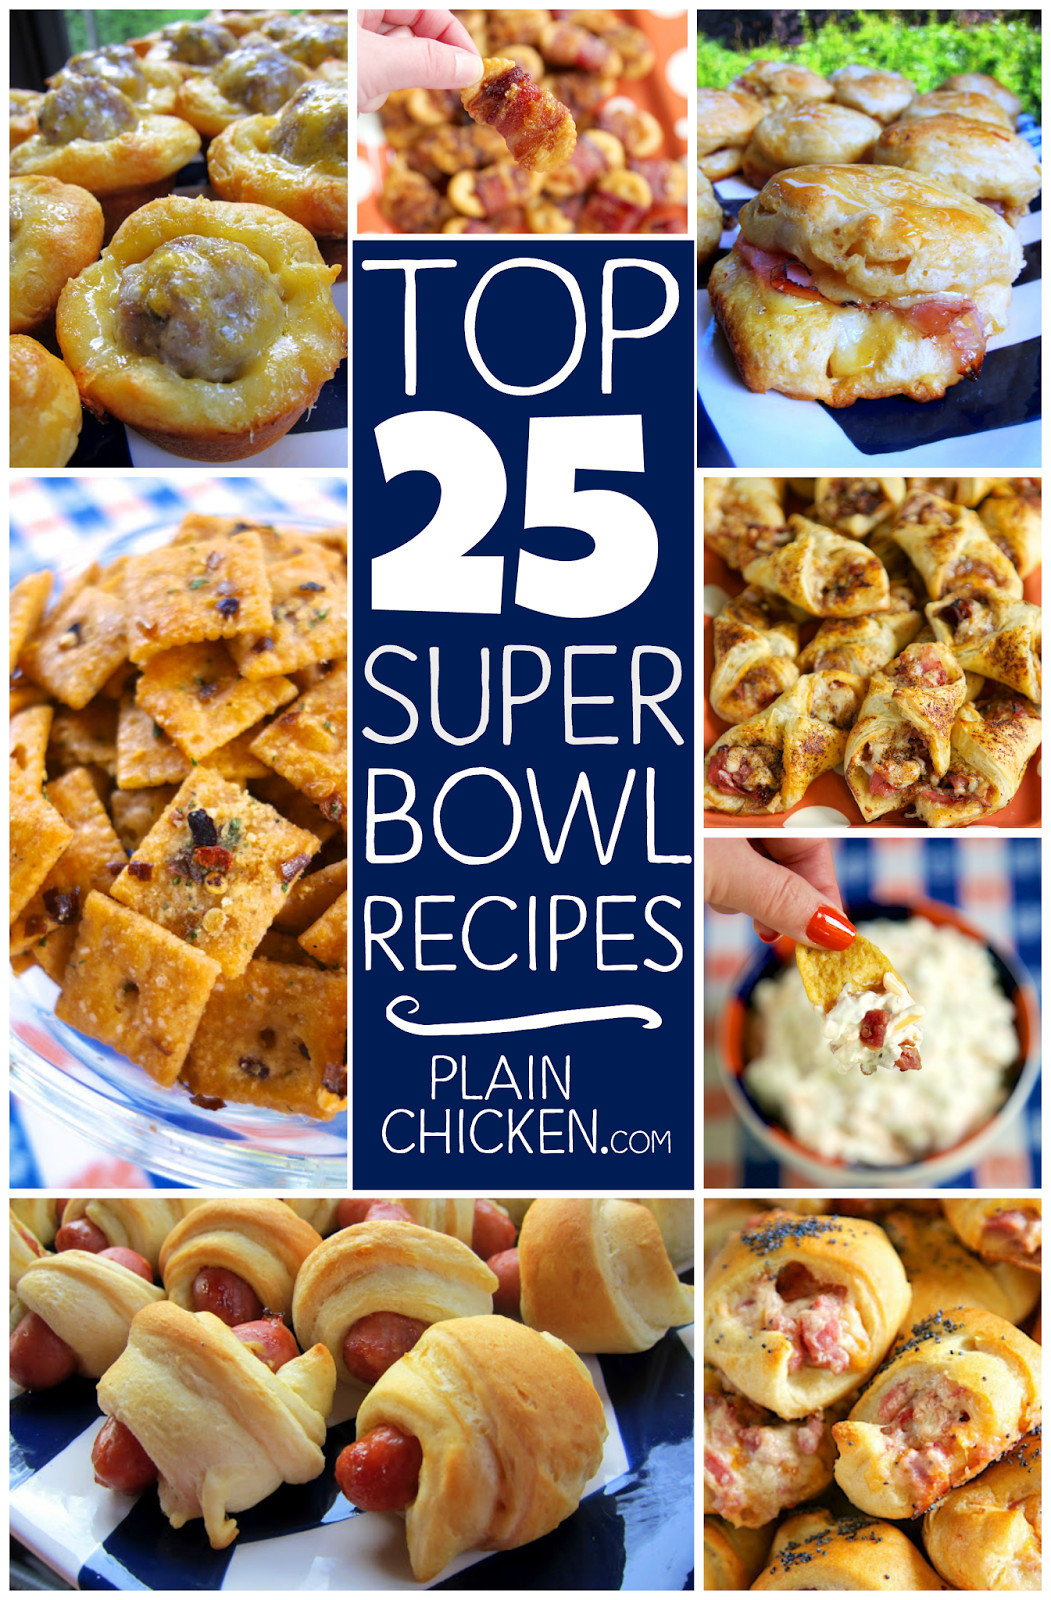 Fun Super Bowl Recipes
 Top 25 Super Bowl Recipes